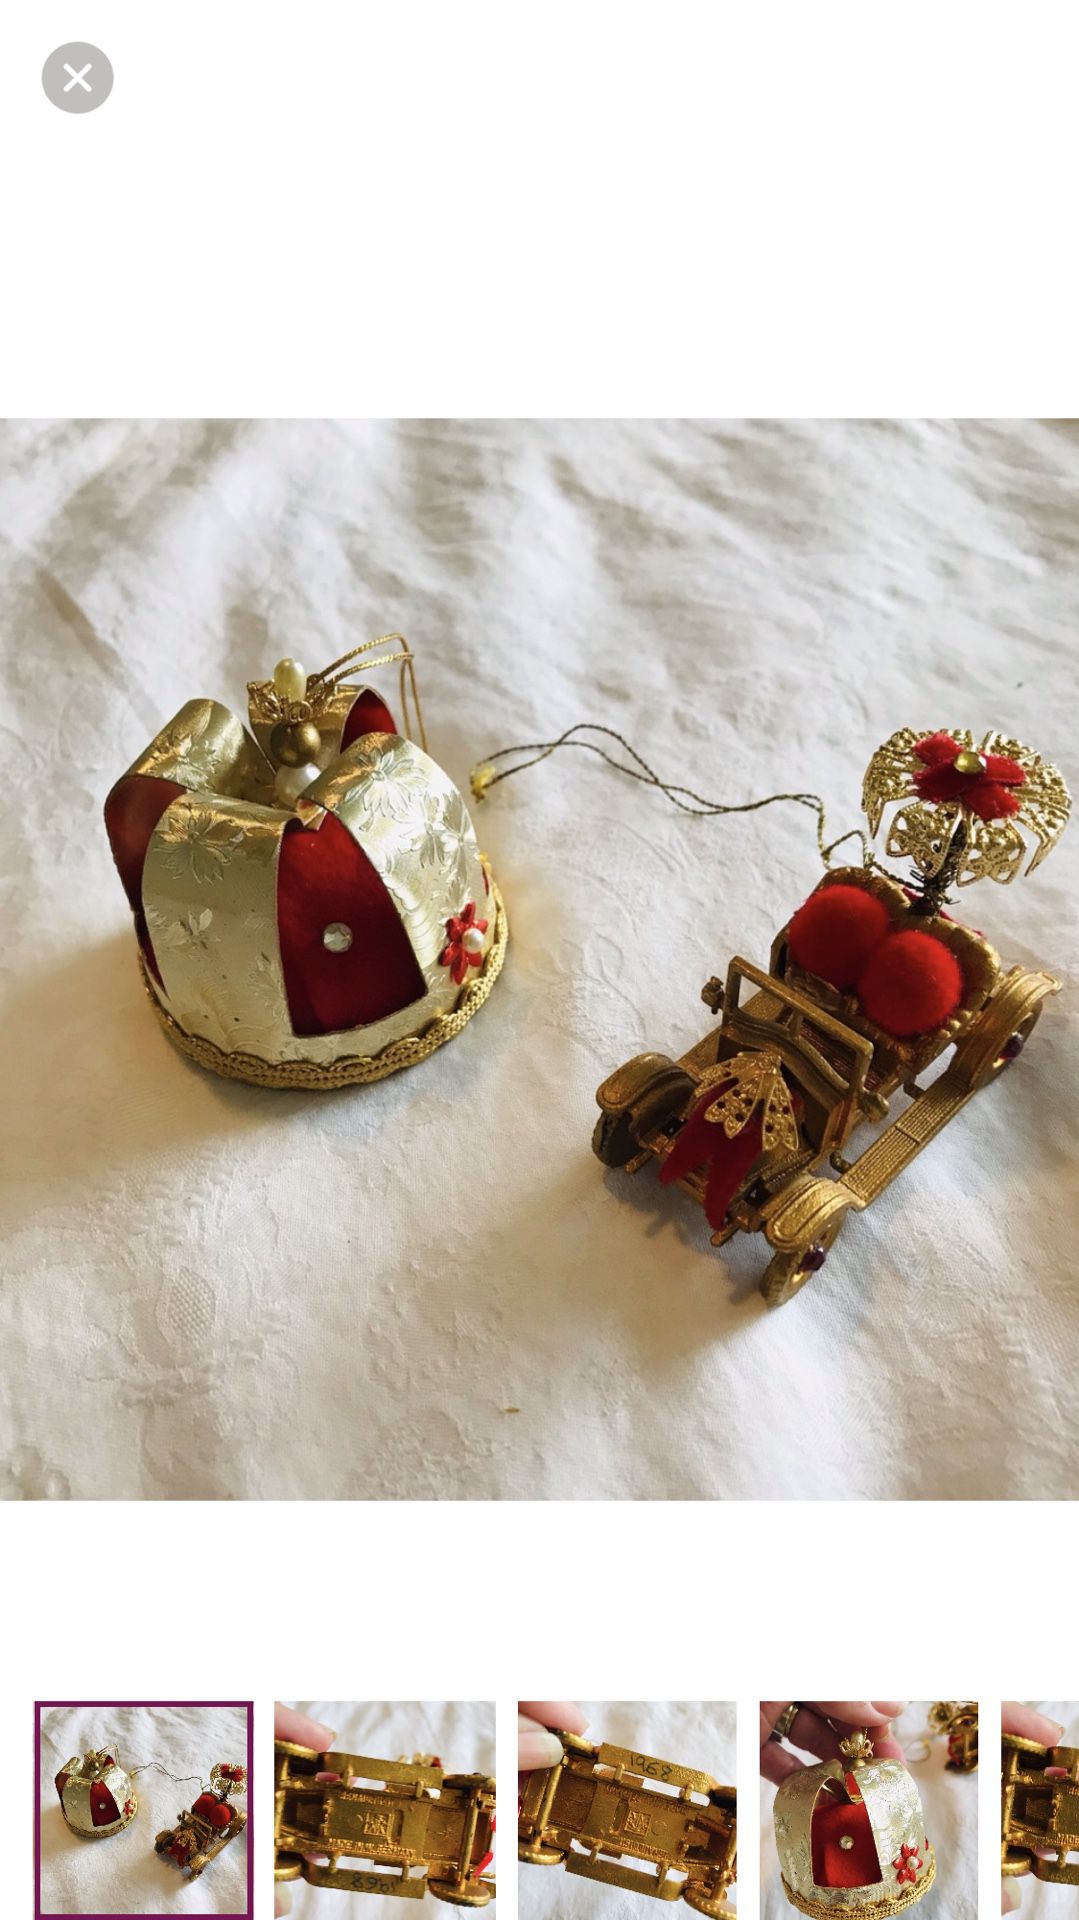 Vintage German ornaments